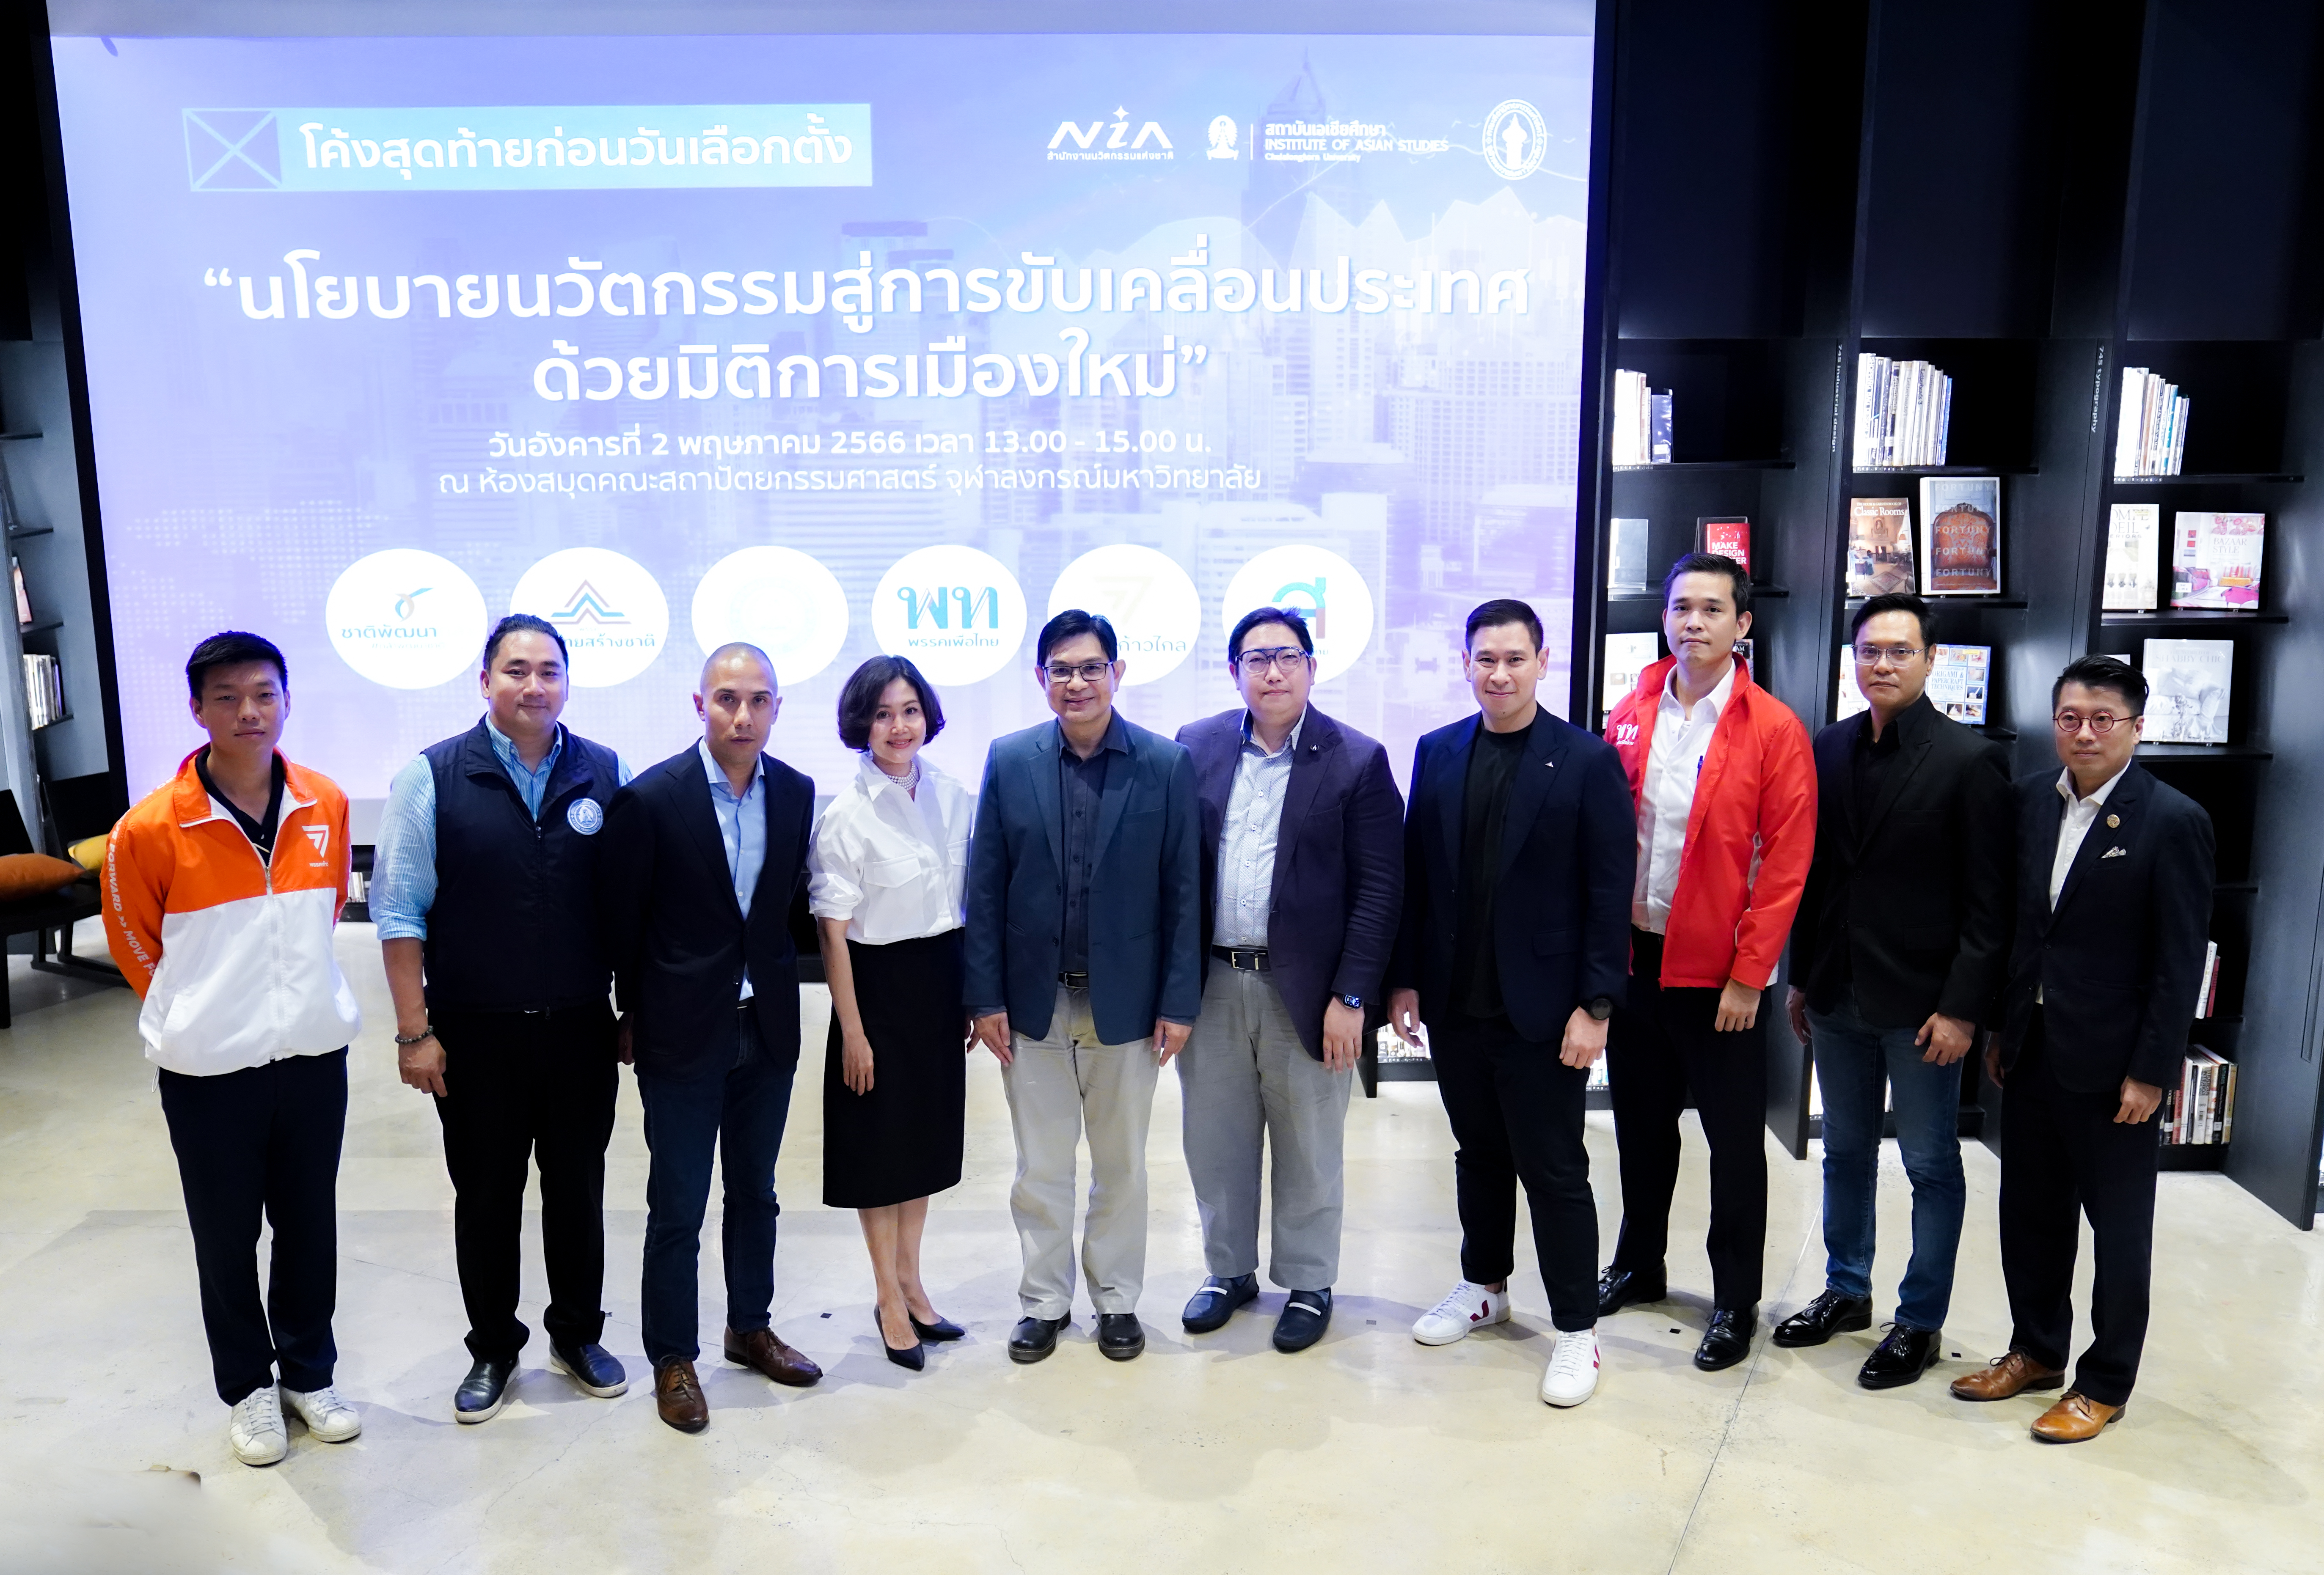 ดีเบต 5 โจทย์นวัตกรรมครั้งแรกของเมืองไทย